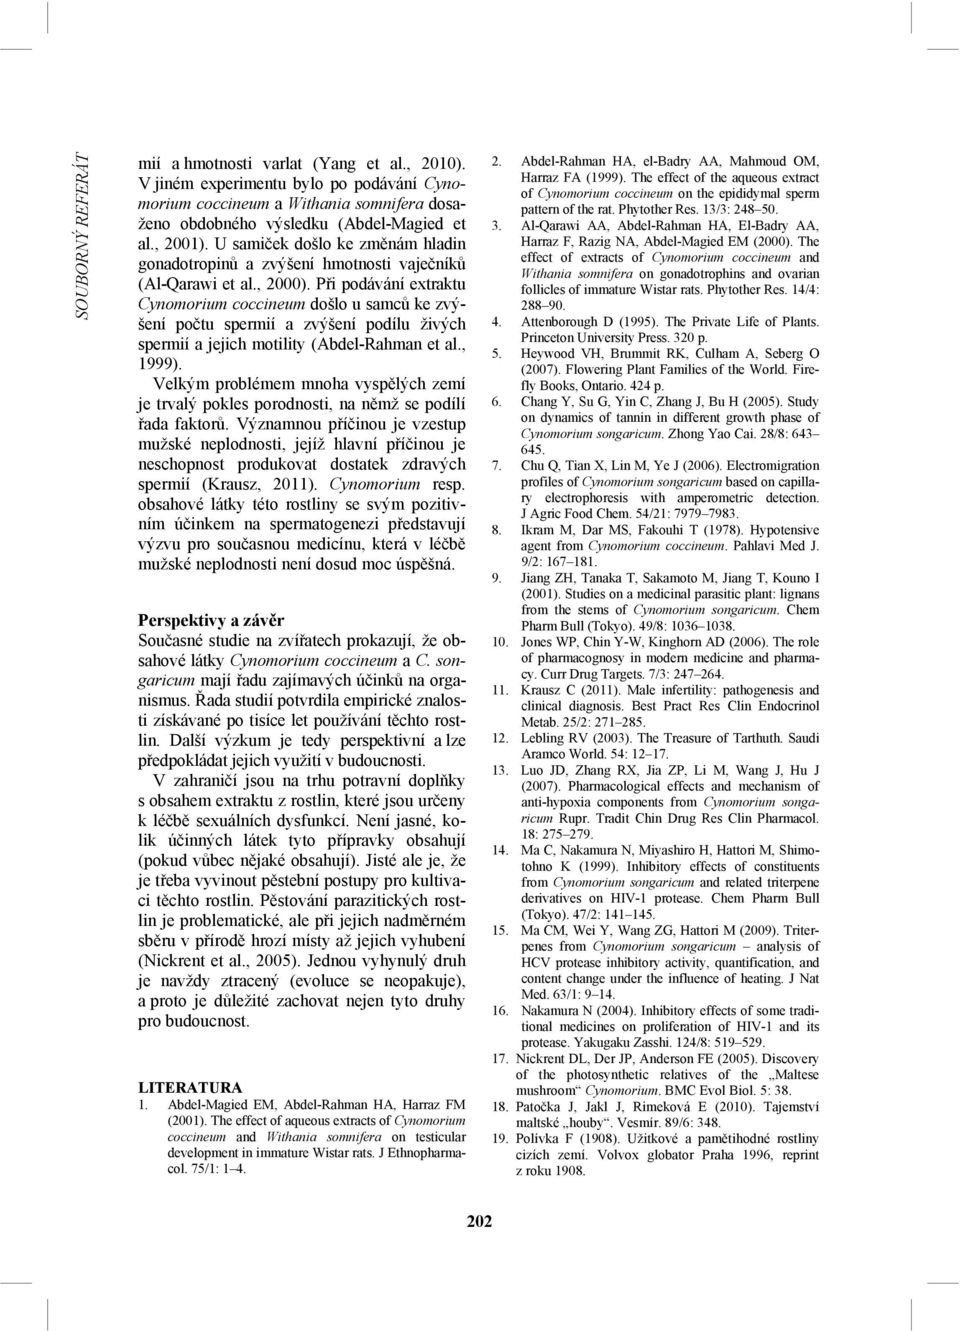 Při podávání extraktu Cynomorium coccineum došlo u samců ke zvýšení počtu spermií a zvýšení podílu živých spermií a jejich motility (Abdel-Rahman et al., 1999).